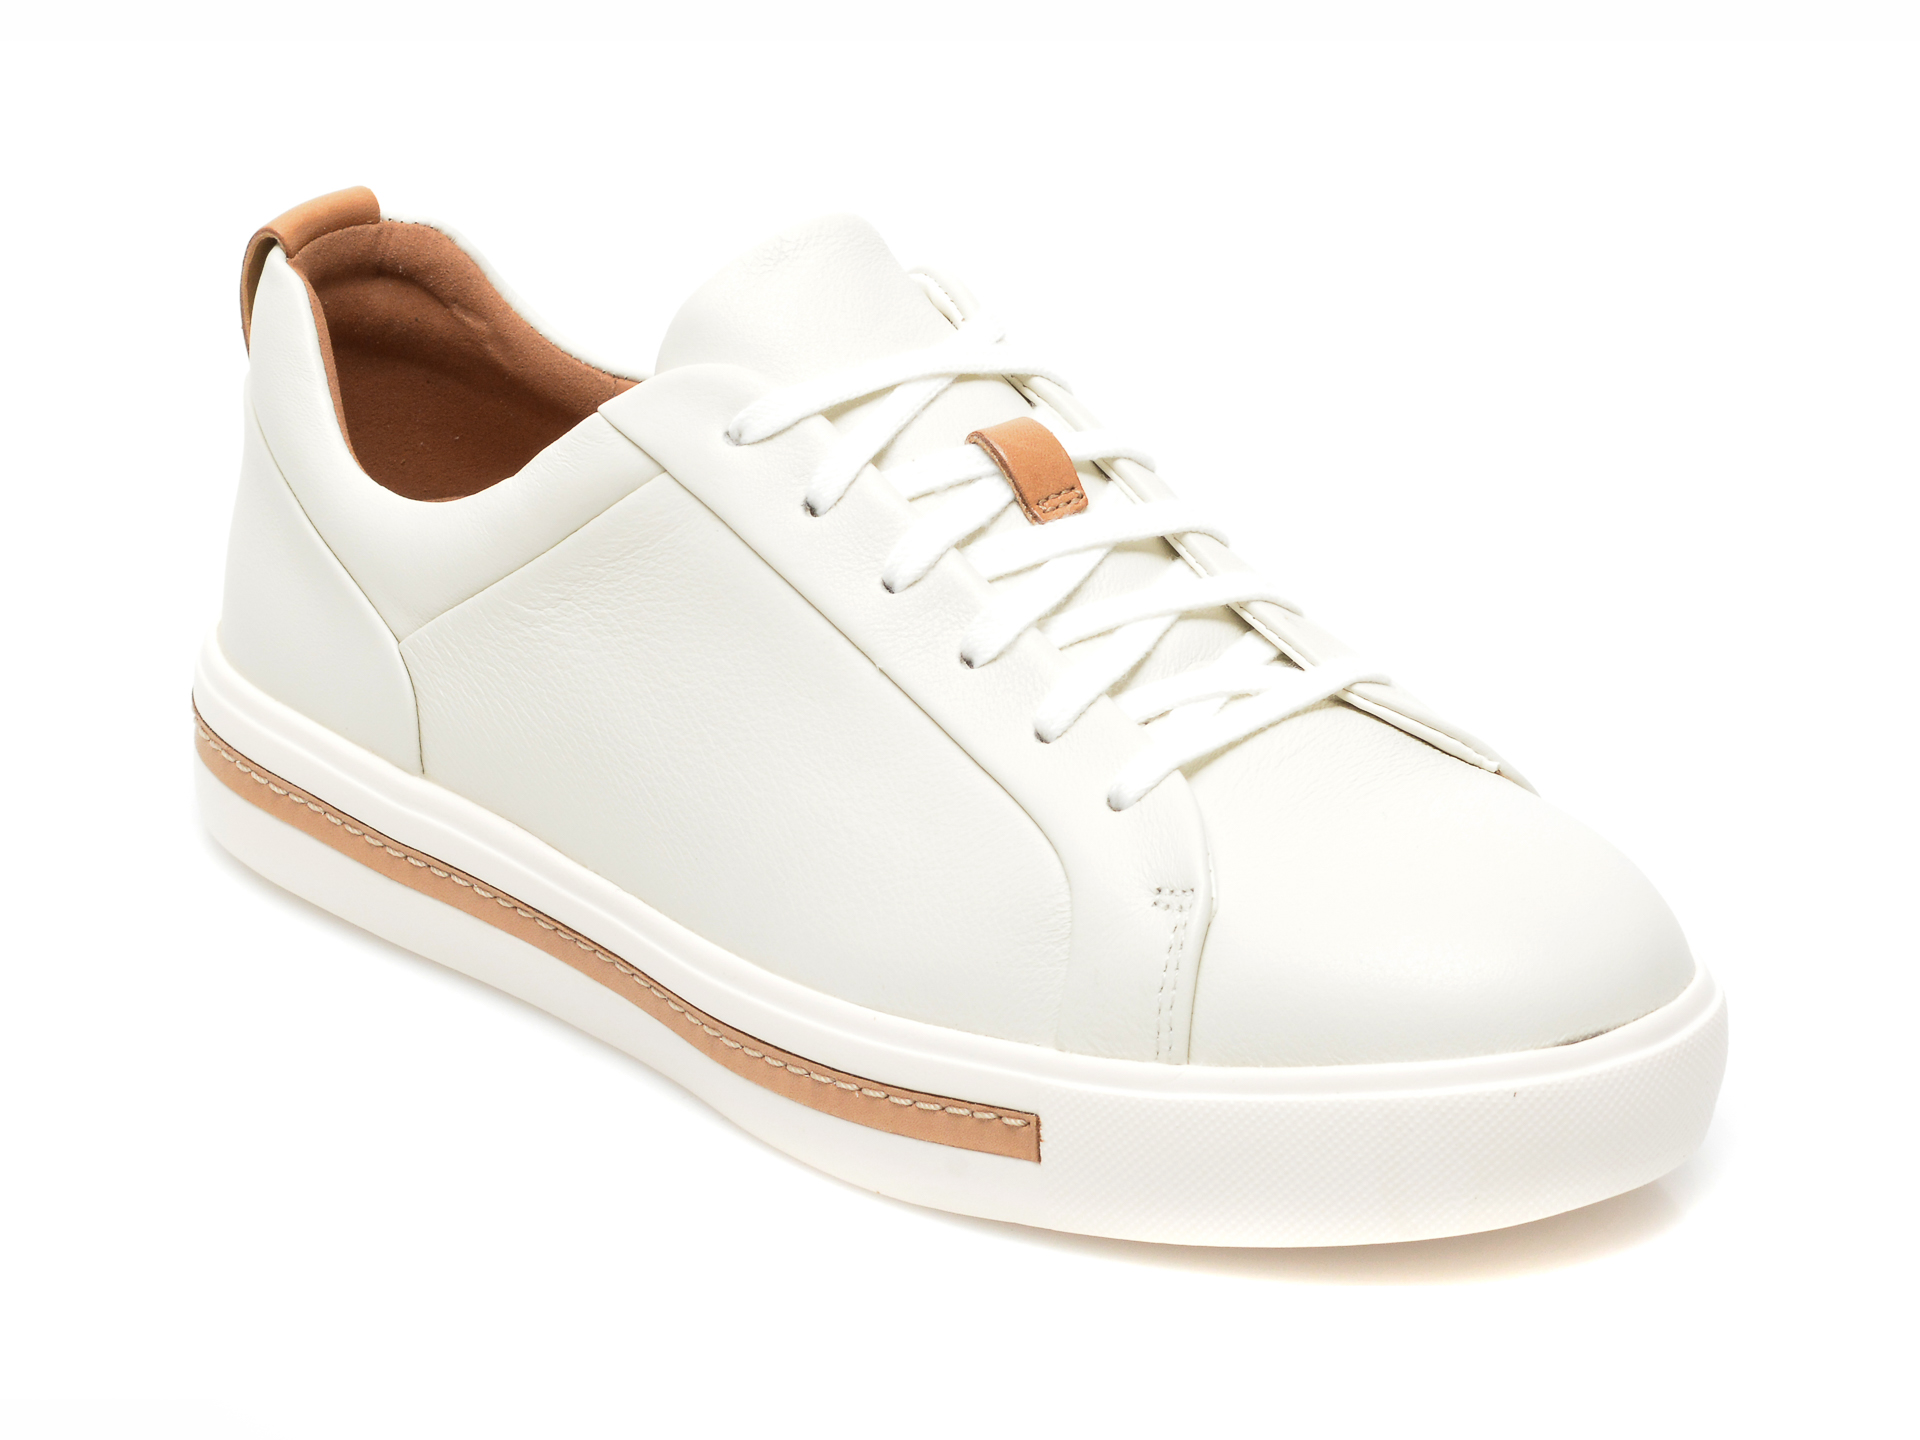 Pantofi CLARKS albi, UN MAUI LACE, din piele naturala Clarks imagine noua